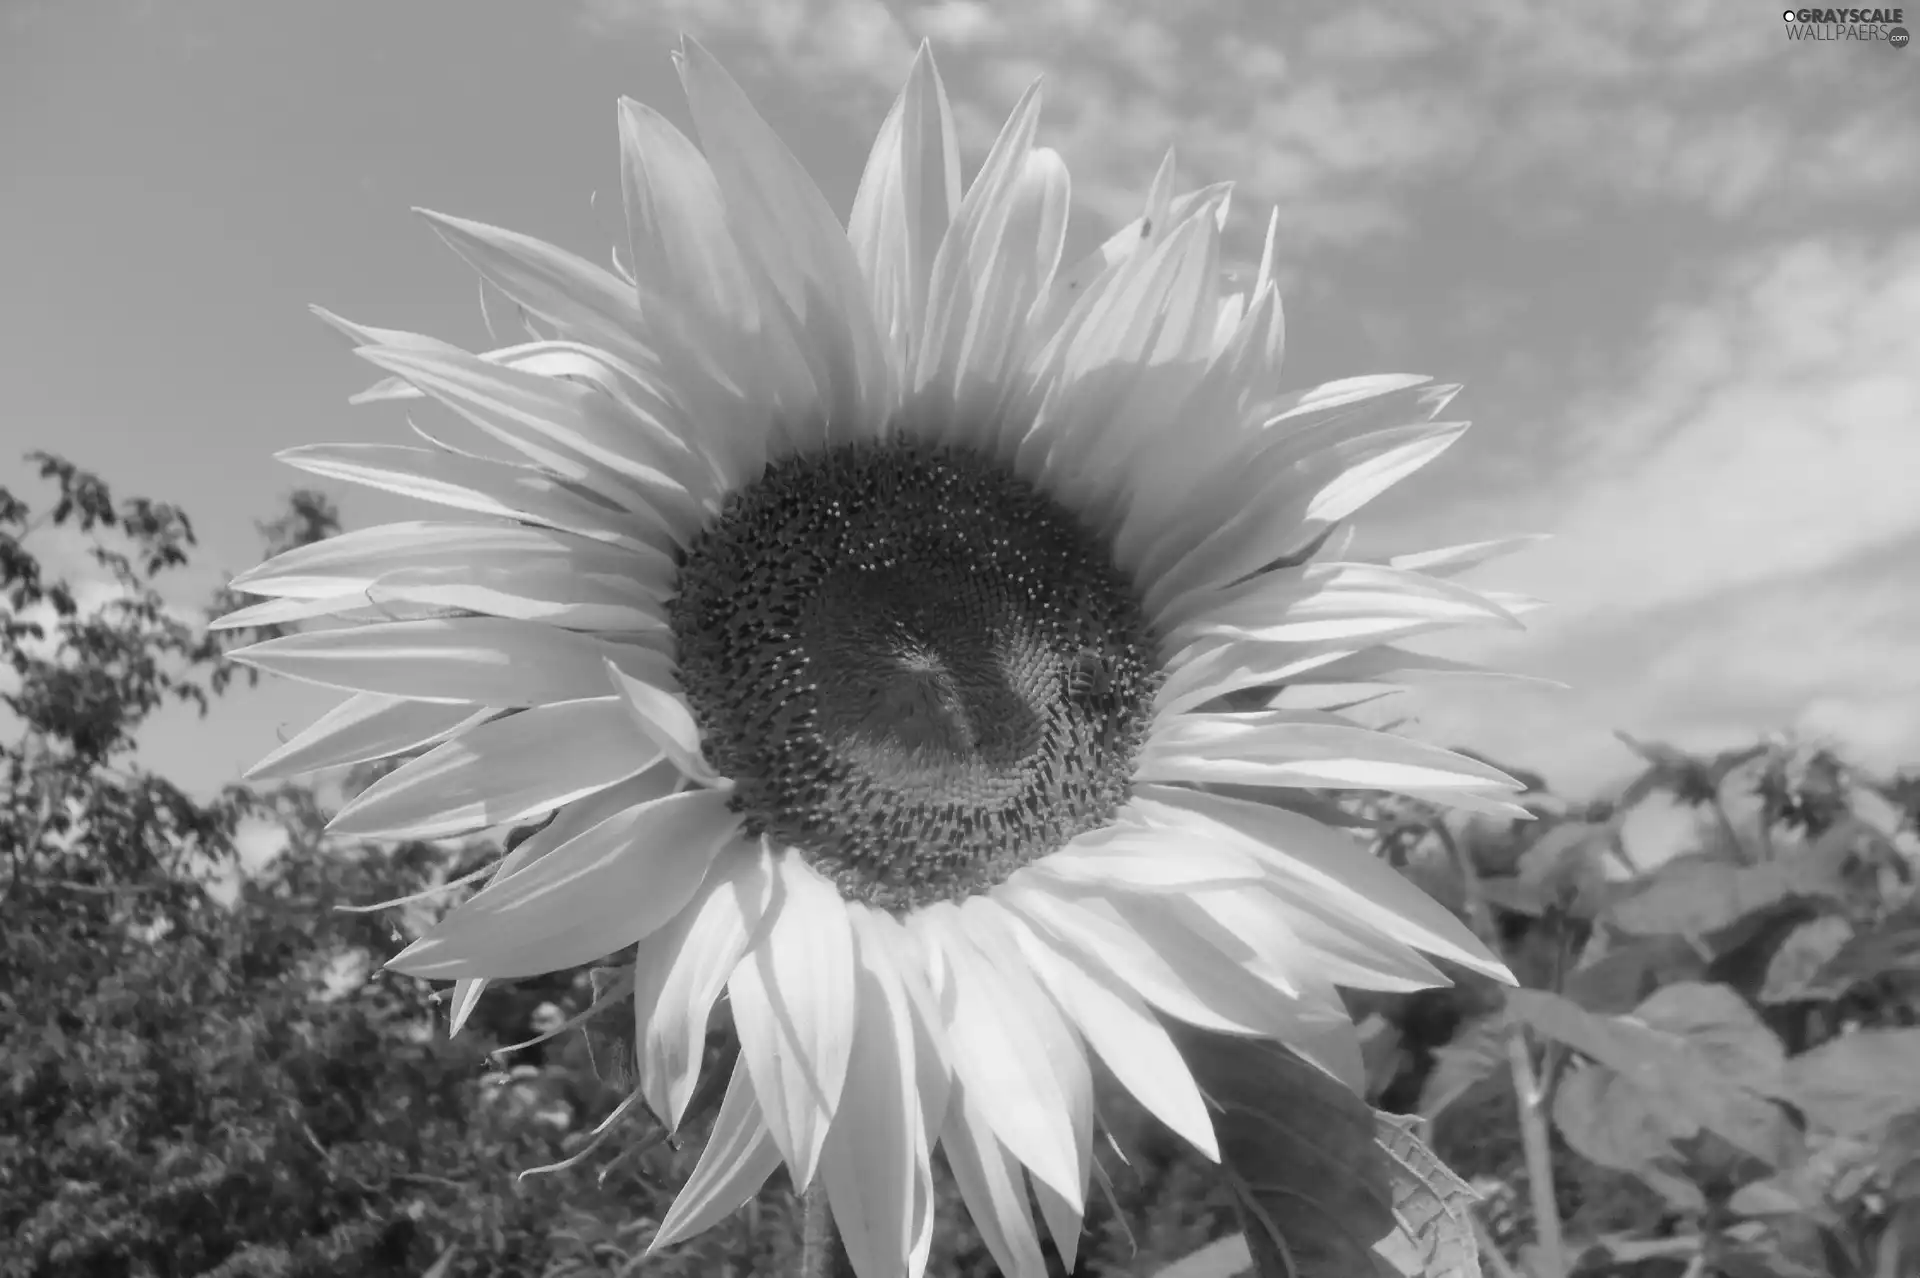 handsome, Sunflower